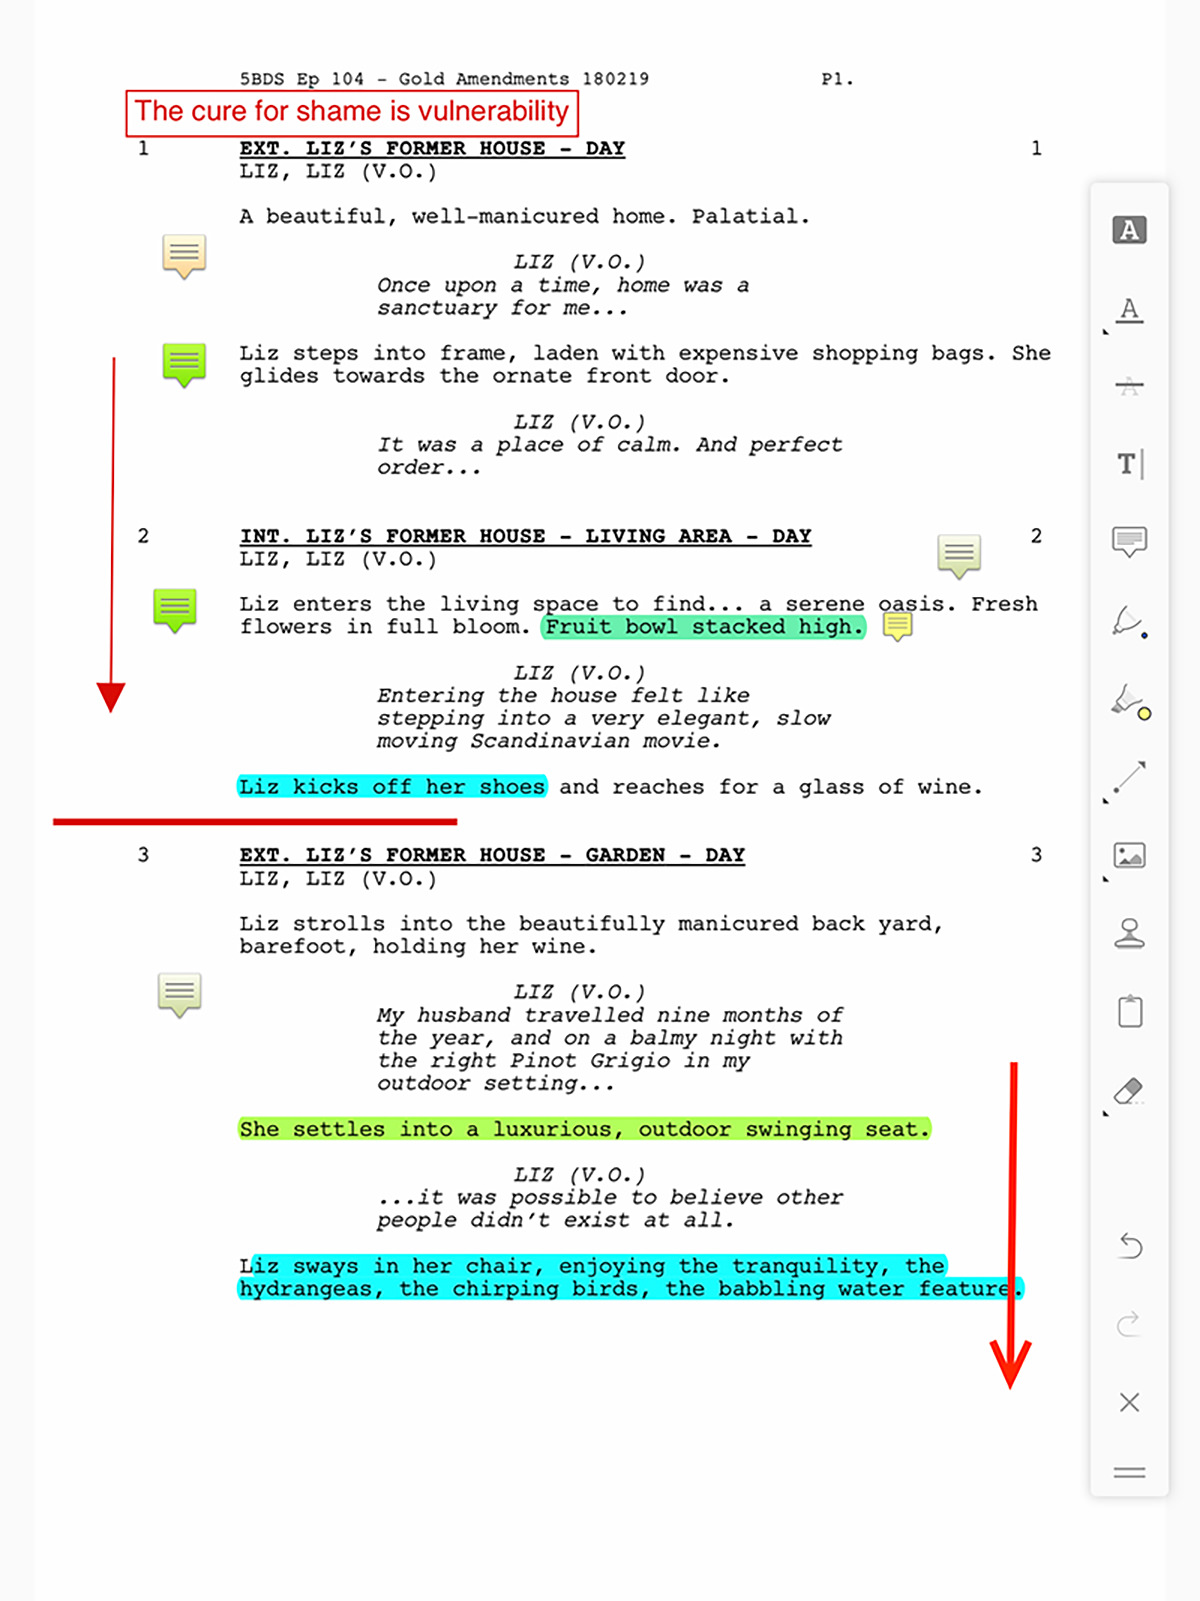 Five Bedrooms script screenshot